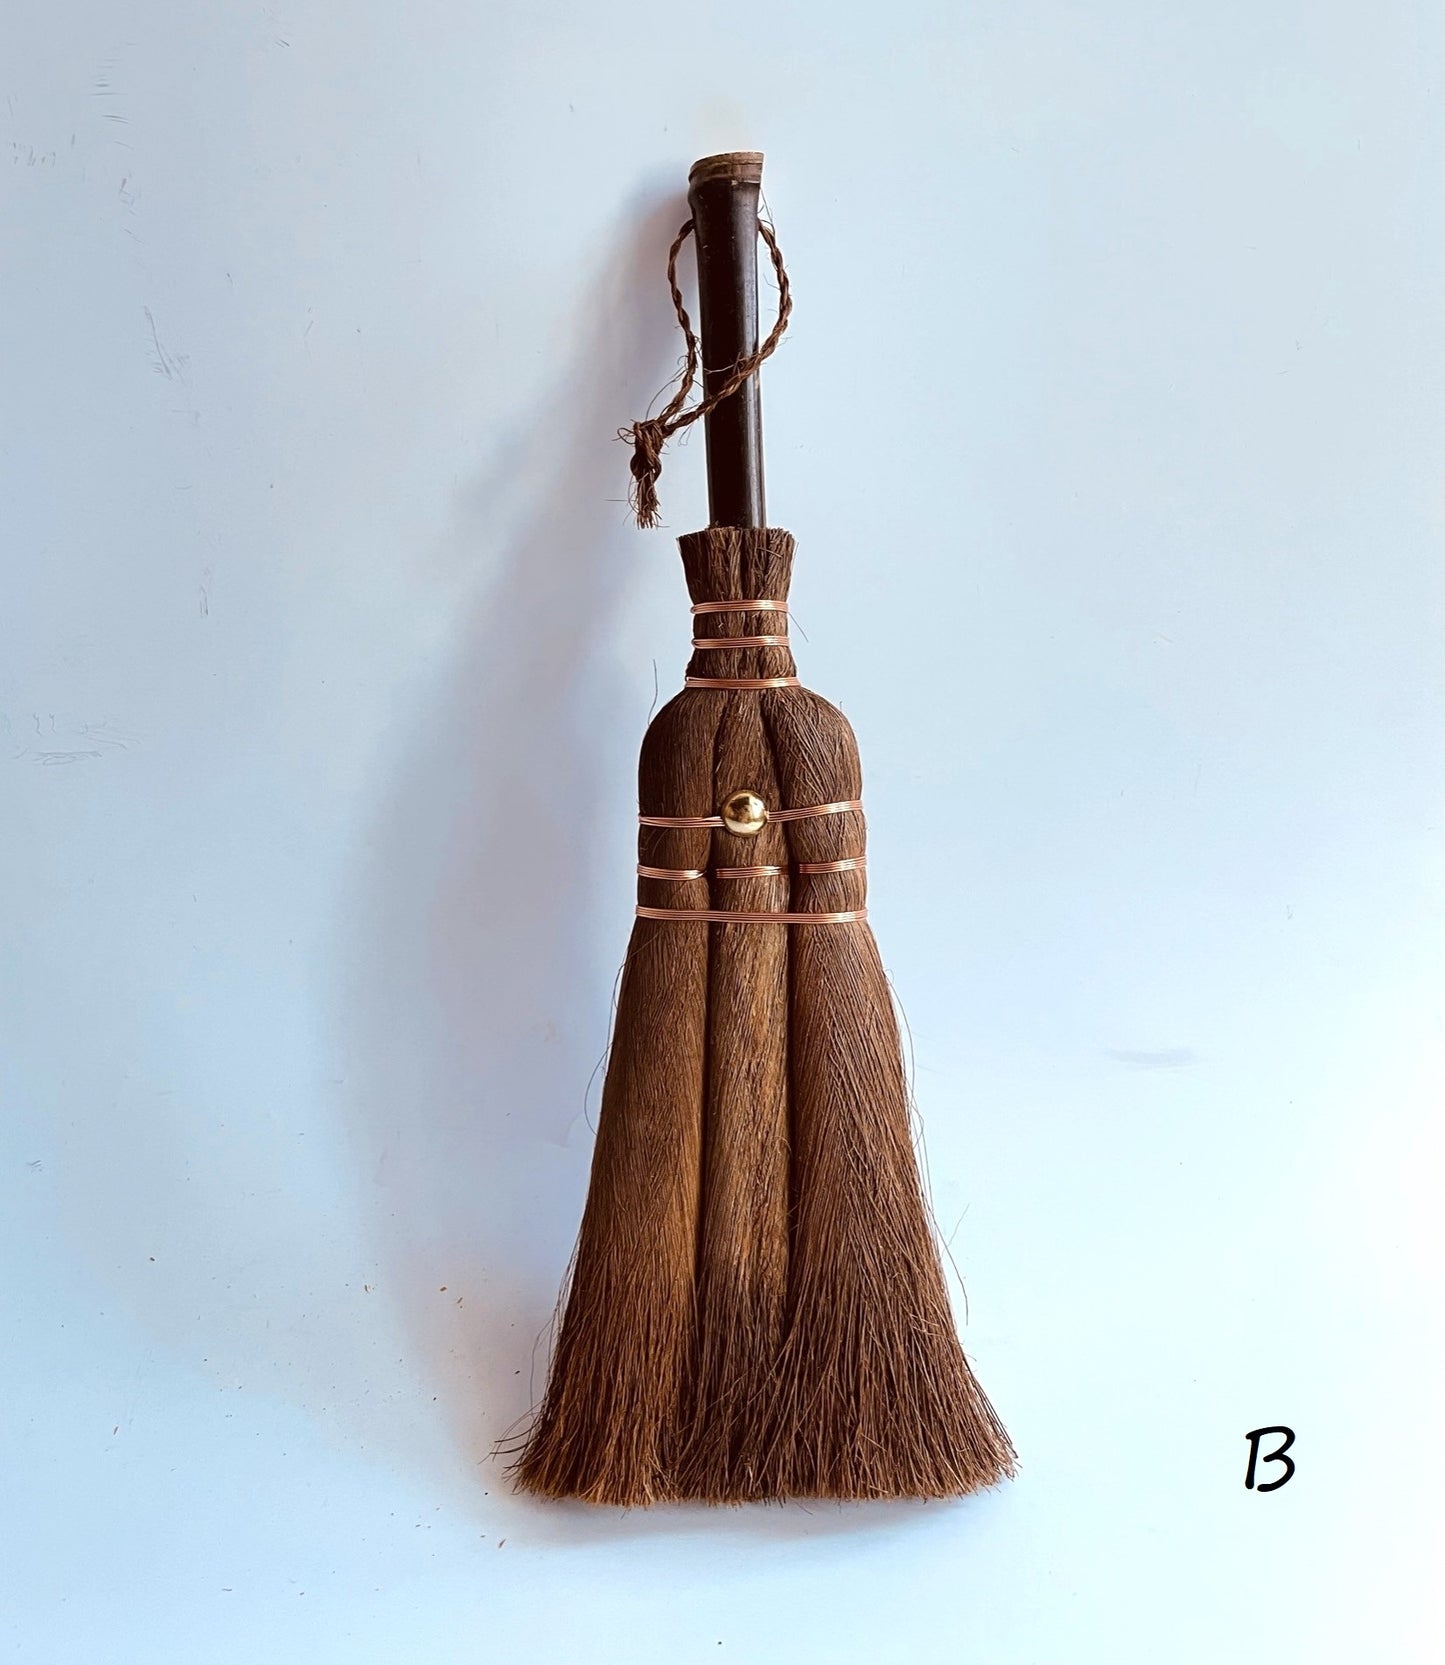 Handmade whisk broom & dustpan